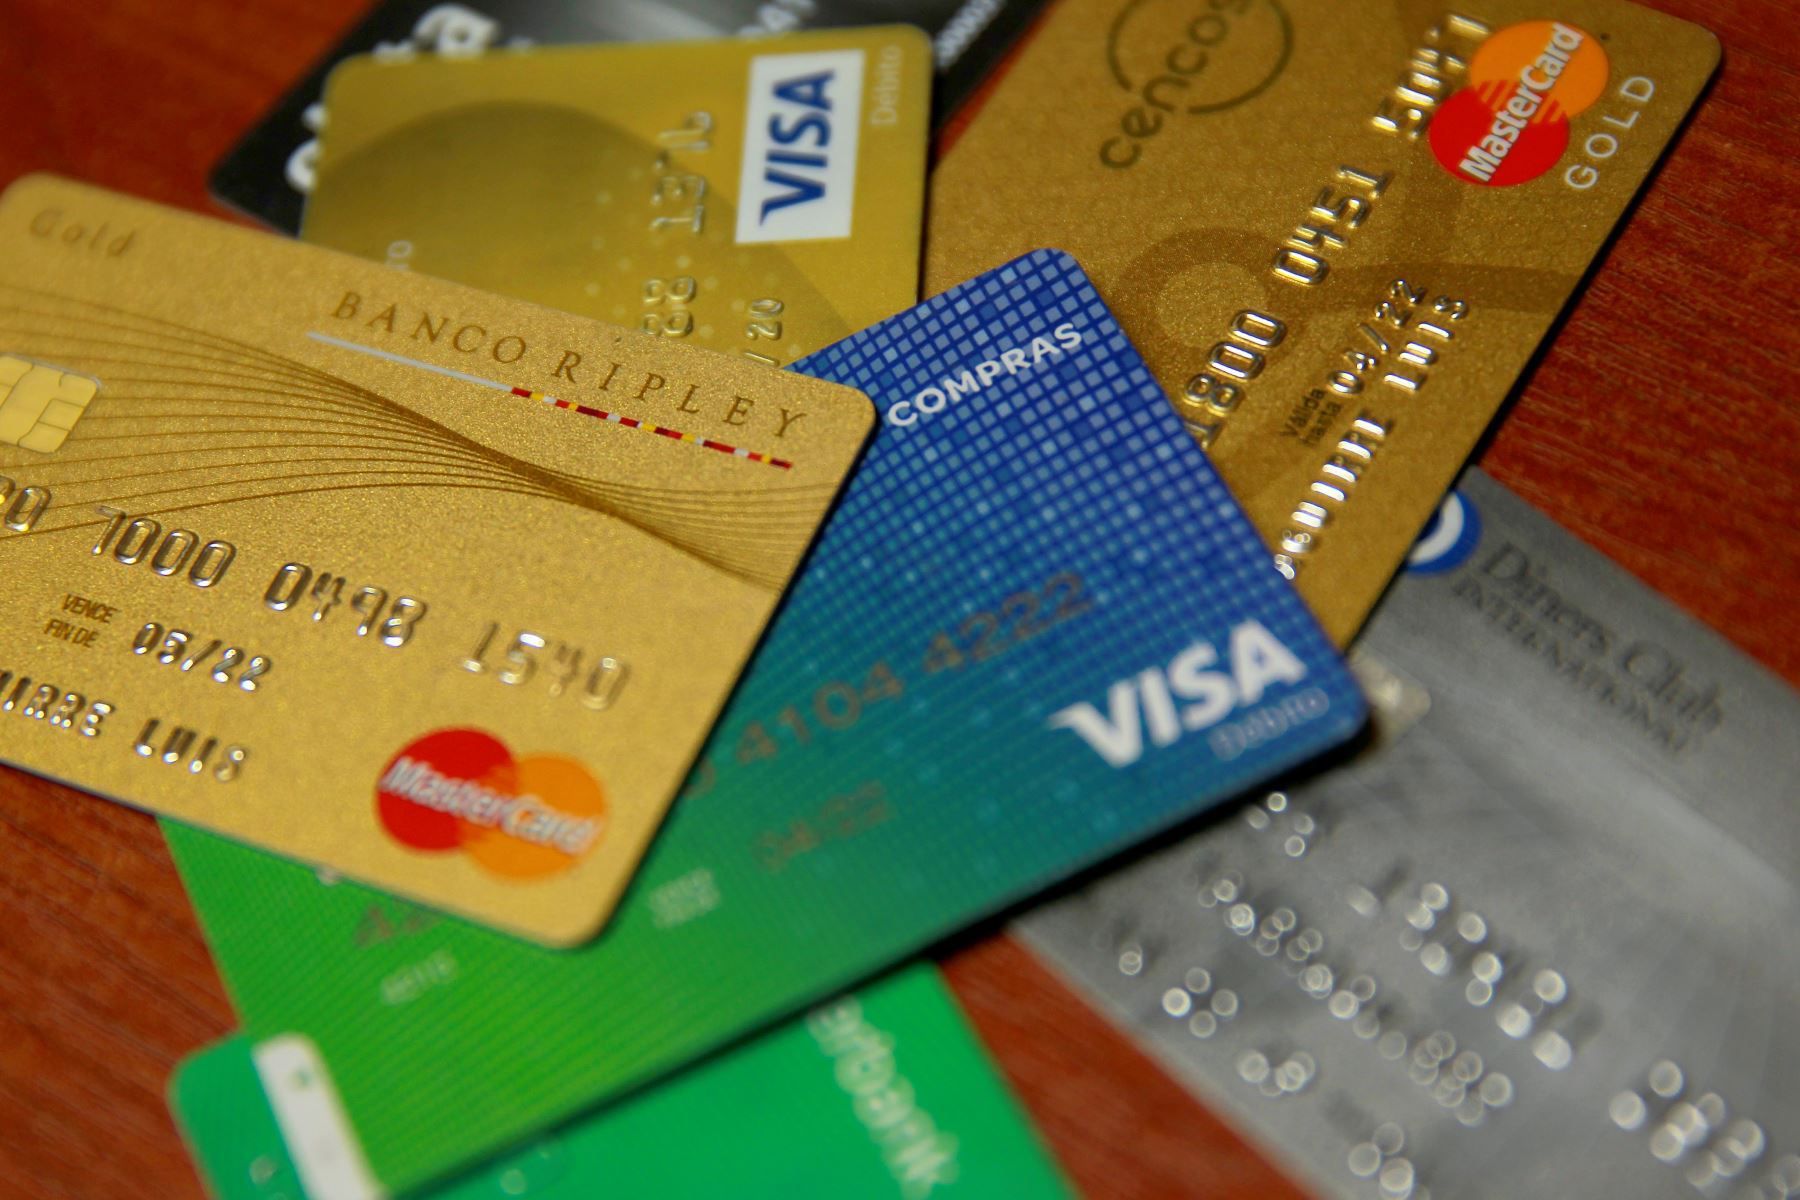 La AFIP suele instruir a los bancos a aplicar los cambios de percepciones en base al momento del consumo y no del pago del resumen de la tarjeta